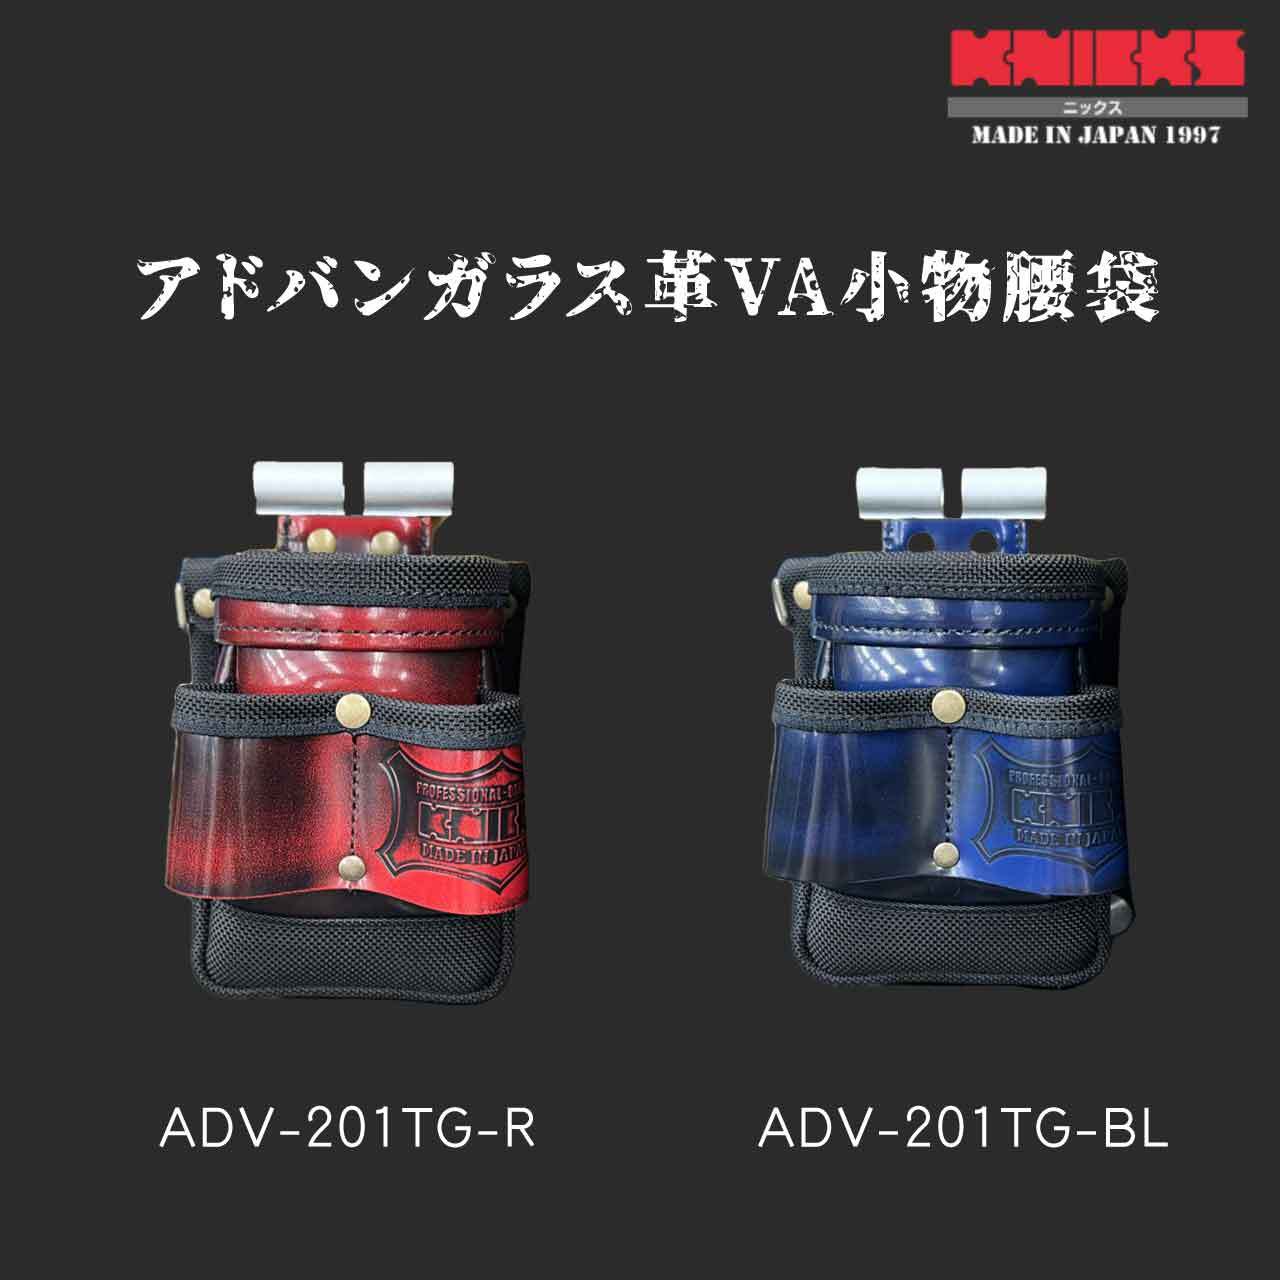 正規品】 ニックス ガラス革小物腰袋 赤 ADV-201VADX-R